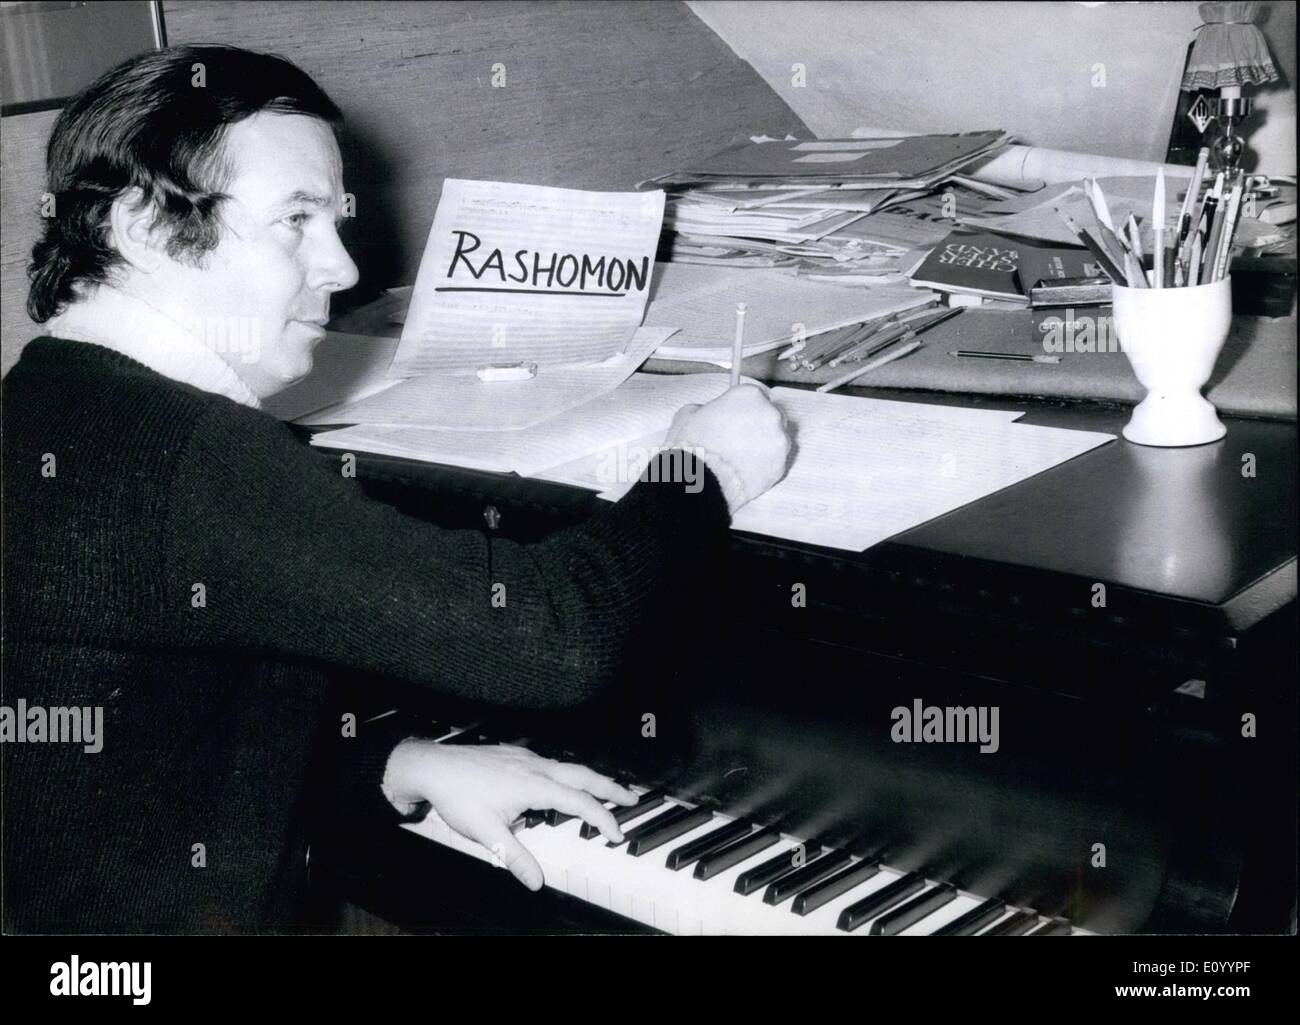 Le 12 décembre 1971 - un opéra écrit spécialement pour les Jeux Olympiques 1972 : Joachim Ludwig, un compositeur de Munich, a été chargé d'écrire un opéra qui doit être effectuée lors des Jeux Olympiques de Munich en 1972,. Le musicien de 38 ans travaille à l'extérieur afin de respecter son échéance. (Notre photo) Herr Ludwig compose sa première pièce pour piano à l'âge de 11 ans, fait ses débuts comme pianiste à l'âge de 12 ans et a étudié le piano, la composition et la direction à Dresde, Berlin, Paris, Salzbourg et lorsque l'un de ses professeurs était le célèbre chef d'orchestre Herbert von Karajan Banque D'Images